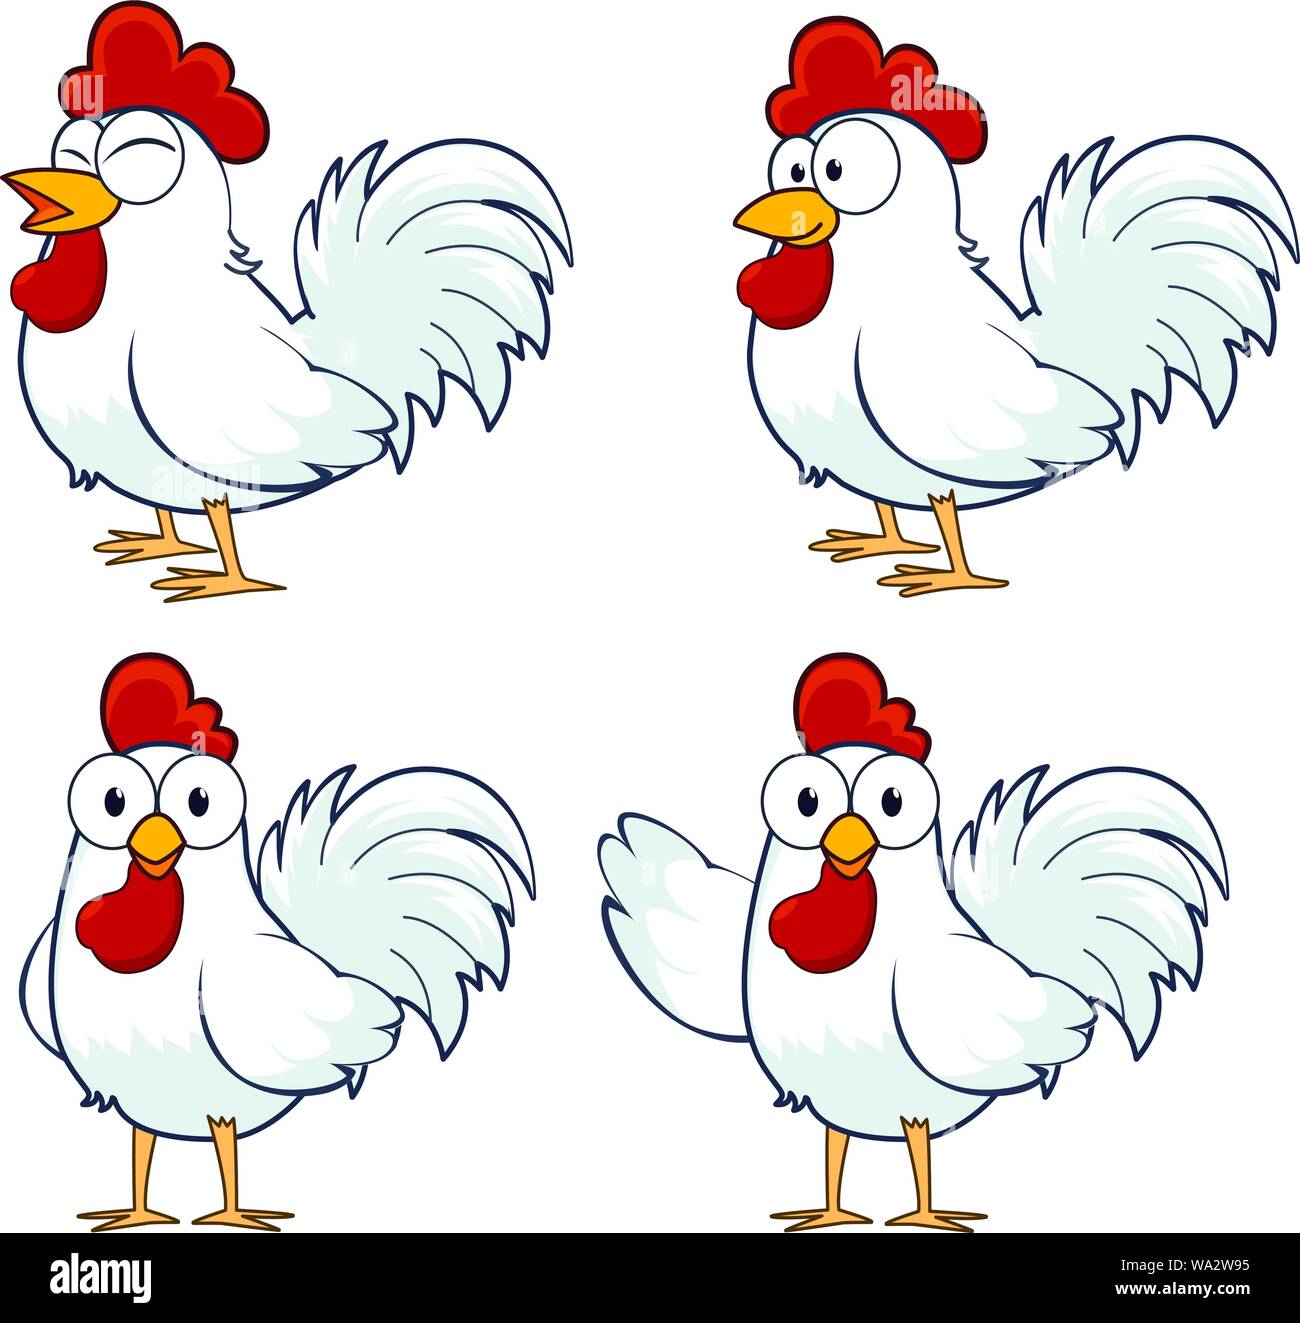 Chicken cartoon character vector Stock Vector Image & Art - Alamy